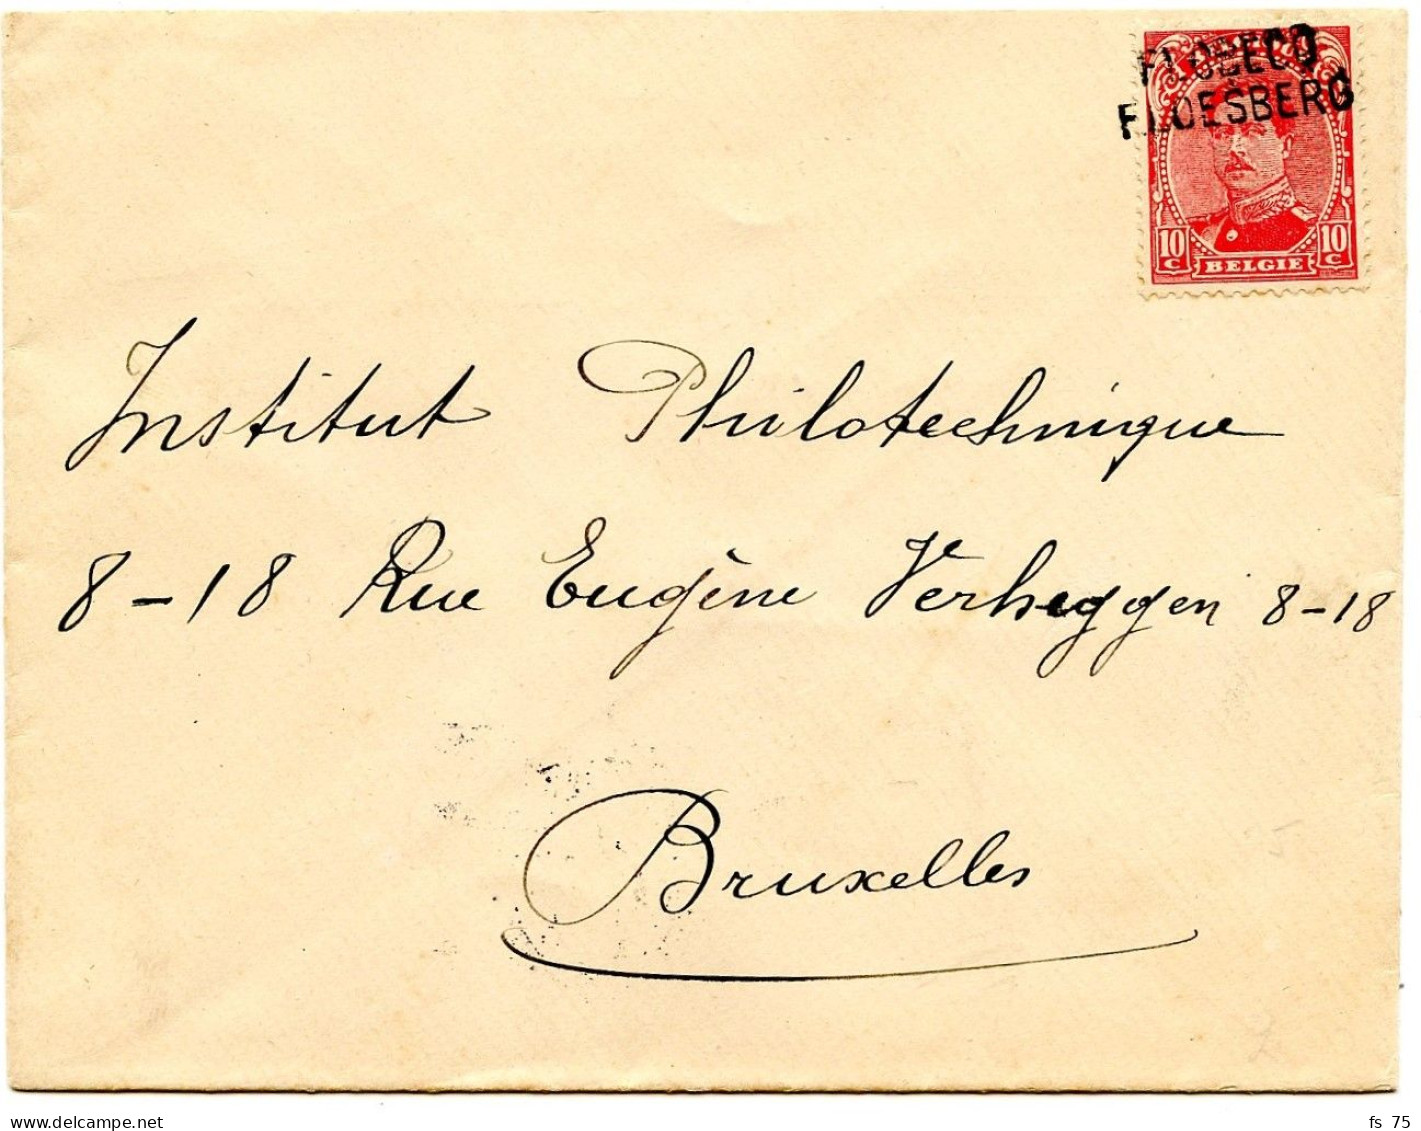 BELGIQUE - COB 138  GRIFFE BILINGUE FLOBECQ SUR LETTRE, 1919 - Lettres & Documents